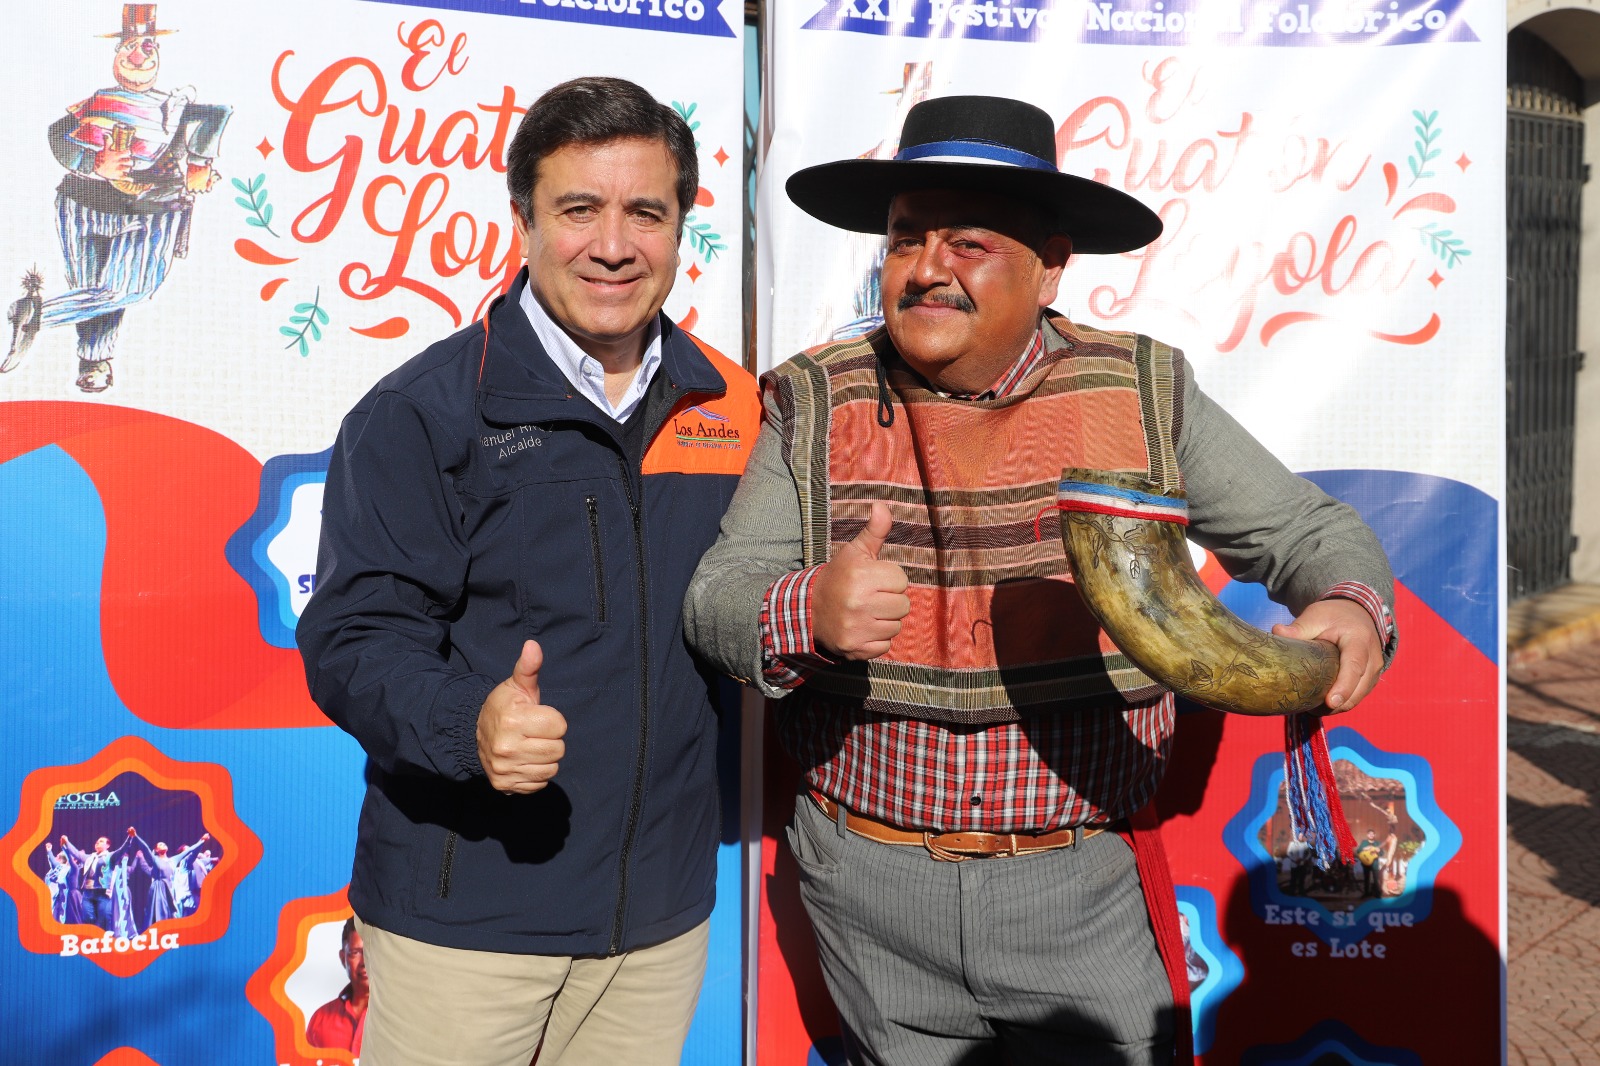 LOS ANDES: Los Andes hará Festival del Guatón Loyola en su versión 22